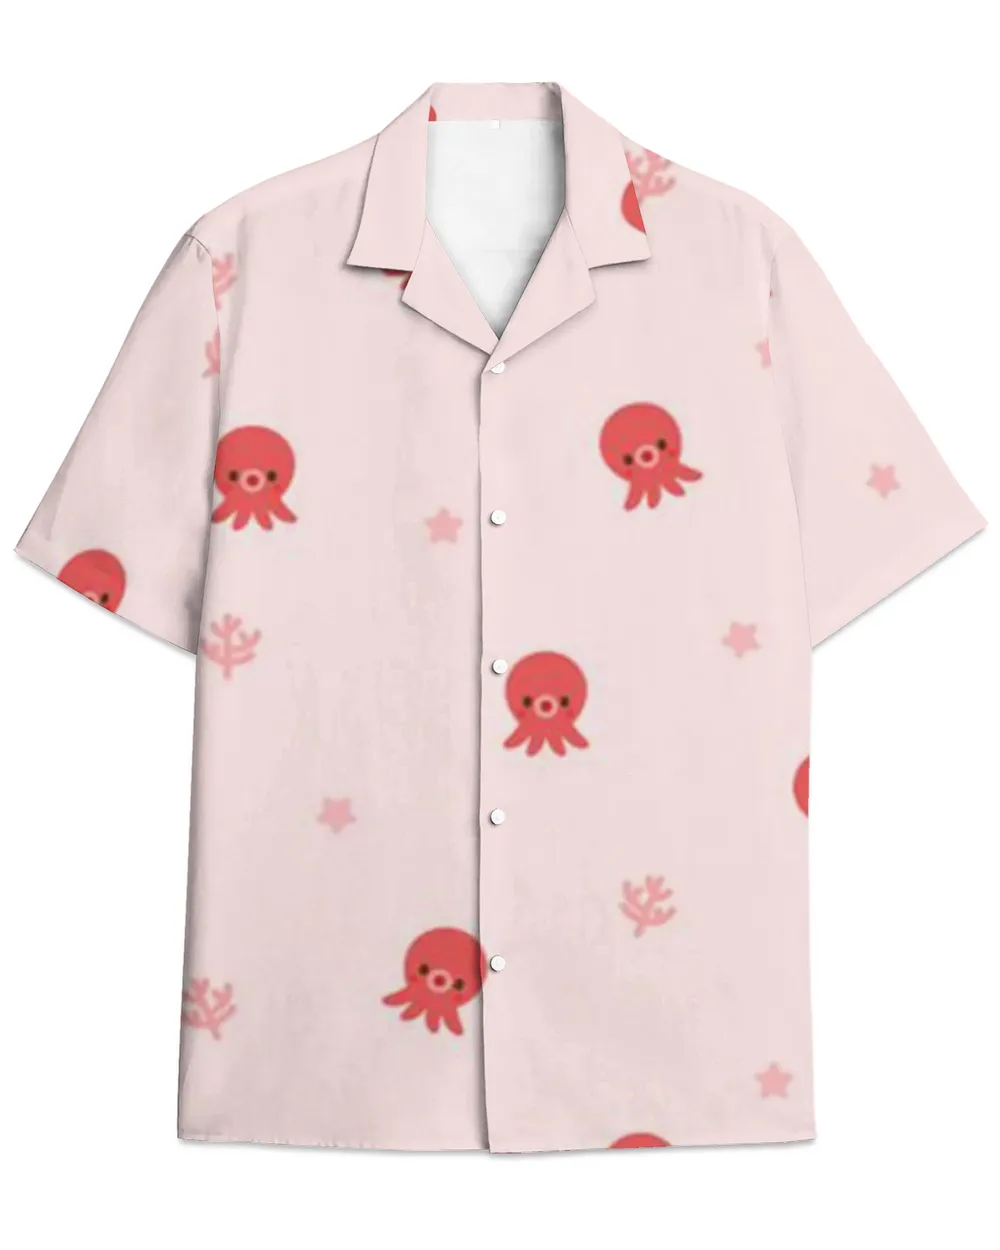 Octopus Hawaiian Shirt